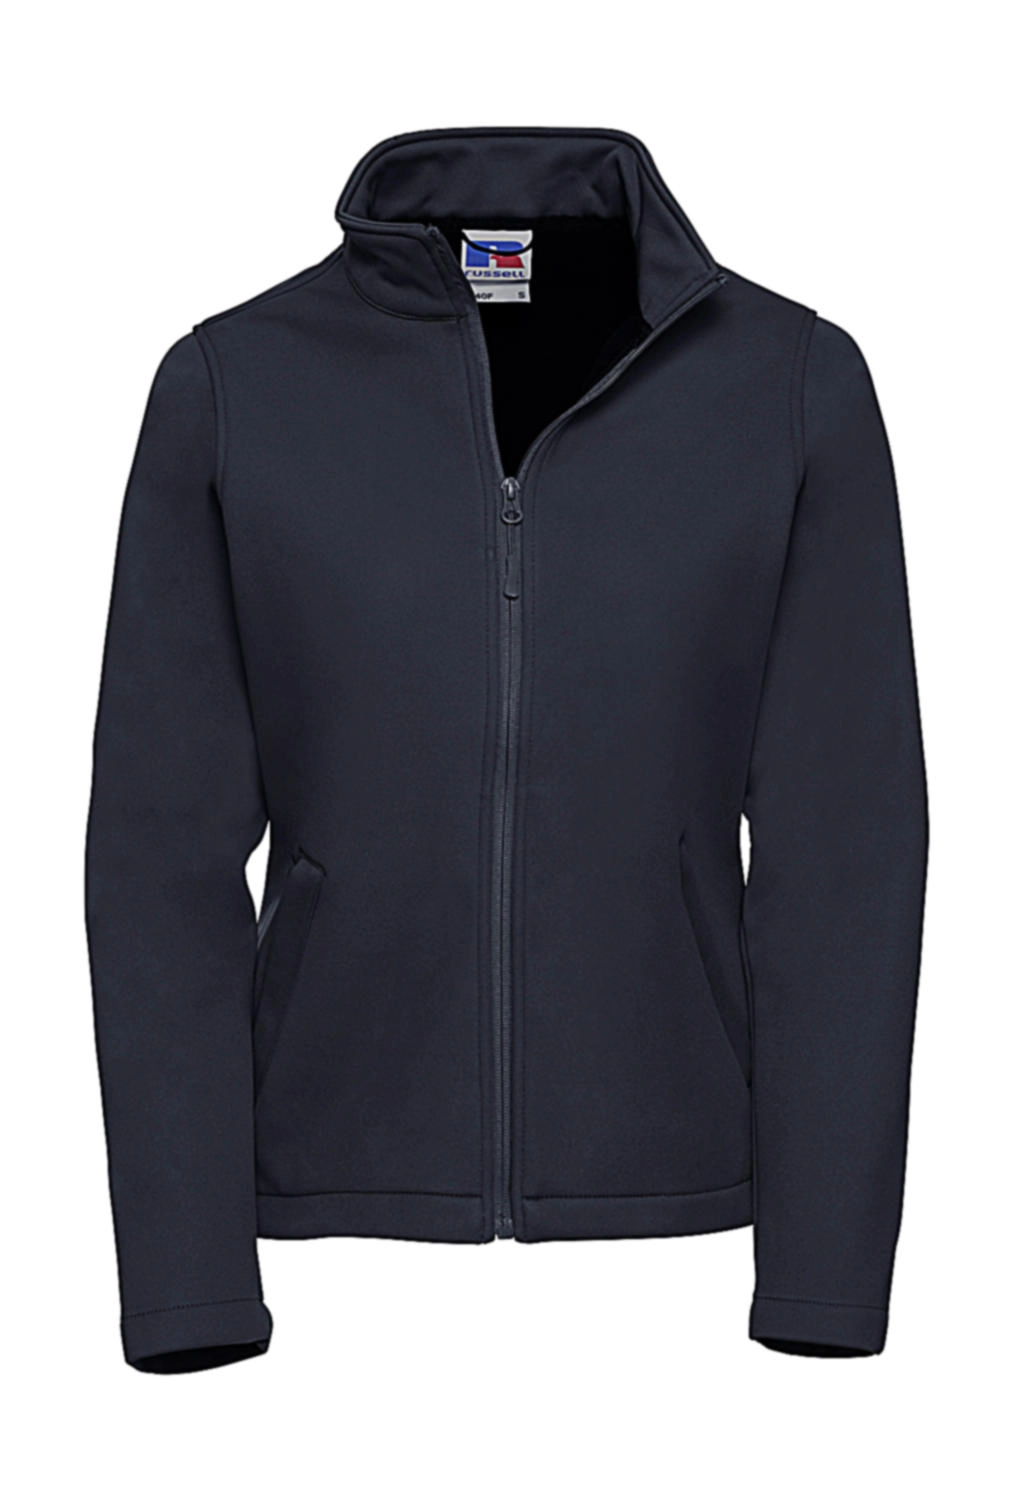 Ladies` Smart Softshell Jacket zum Besticken und Bedrucken in der Farbe French Navy mit Ihren Logo, Schriftzug oder Motiv.